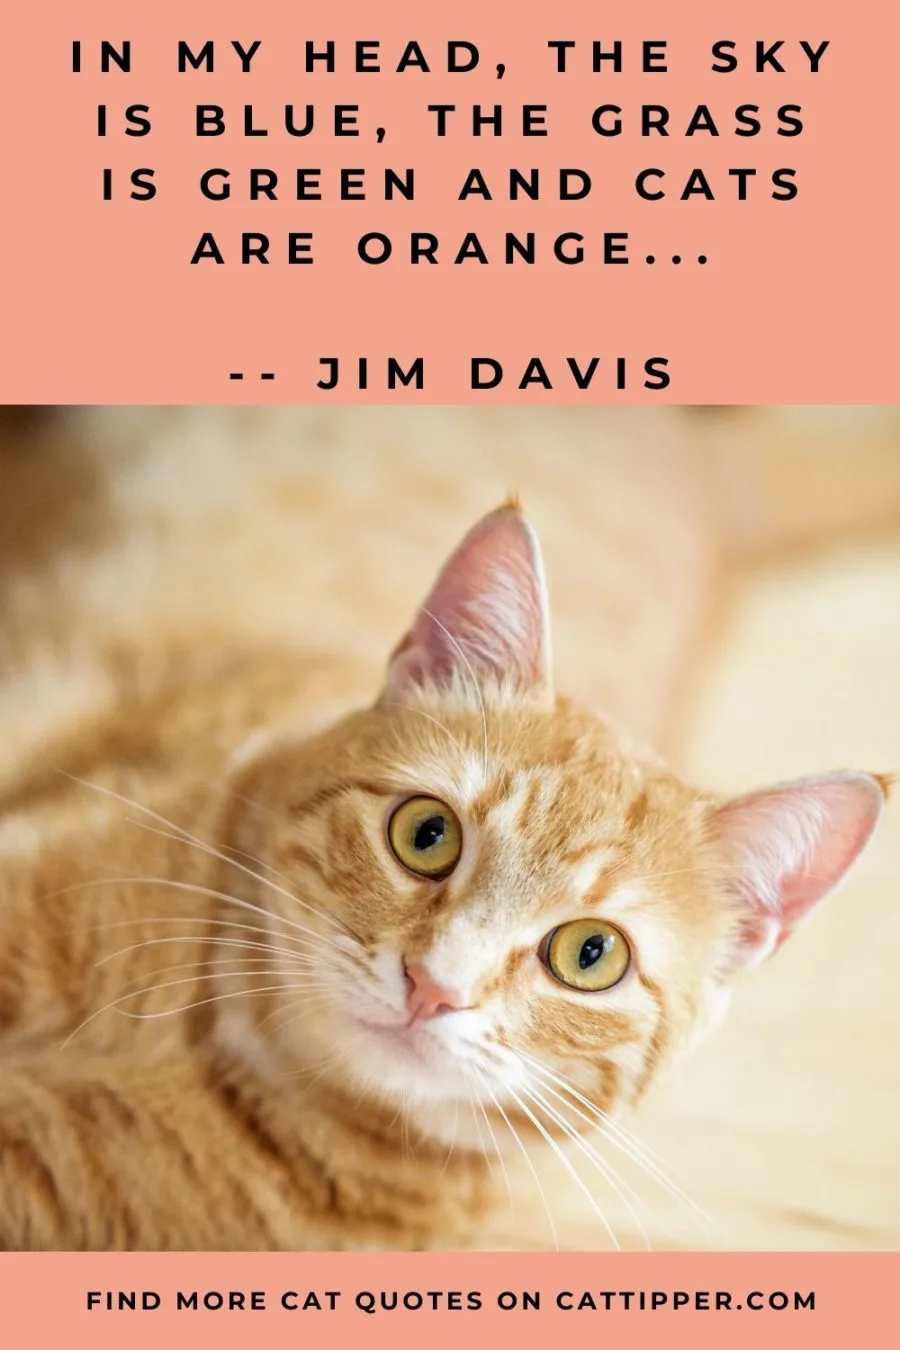 famous jim davis quote about orange cats